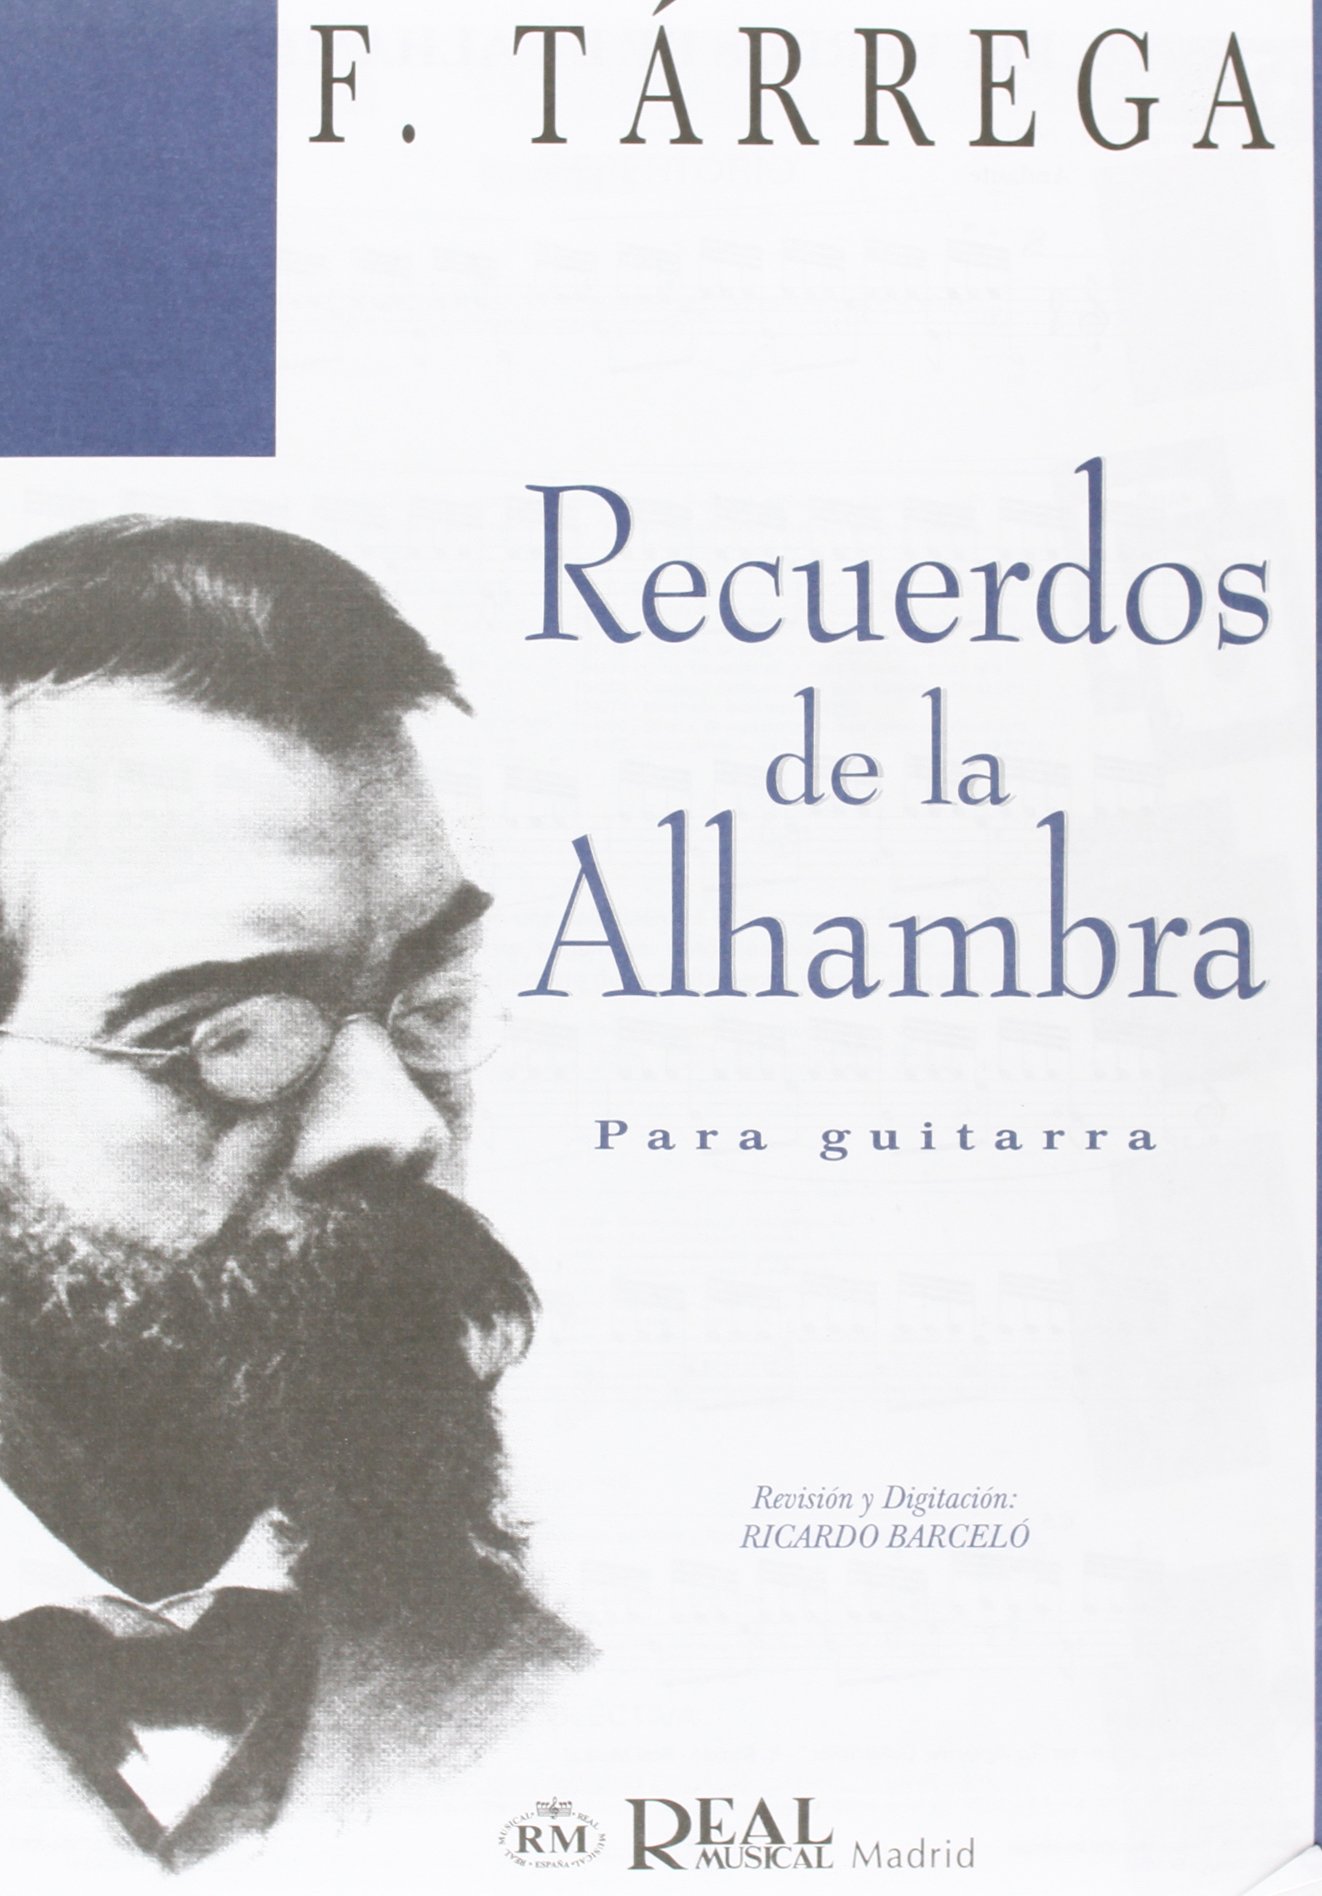 Santi Cortells ens explica quina relació guarda Vila-real amb l’Alhambra i ho fa amb l’obra que evoca aquest legat del guitarrista Francesc Tàrrega